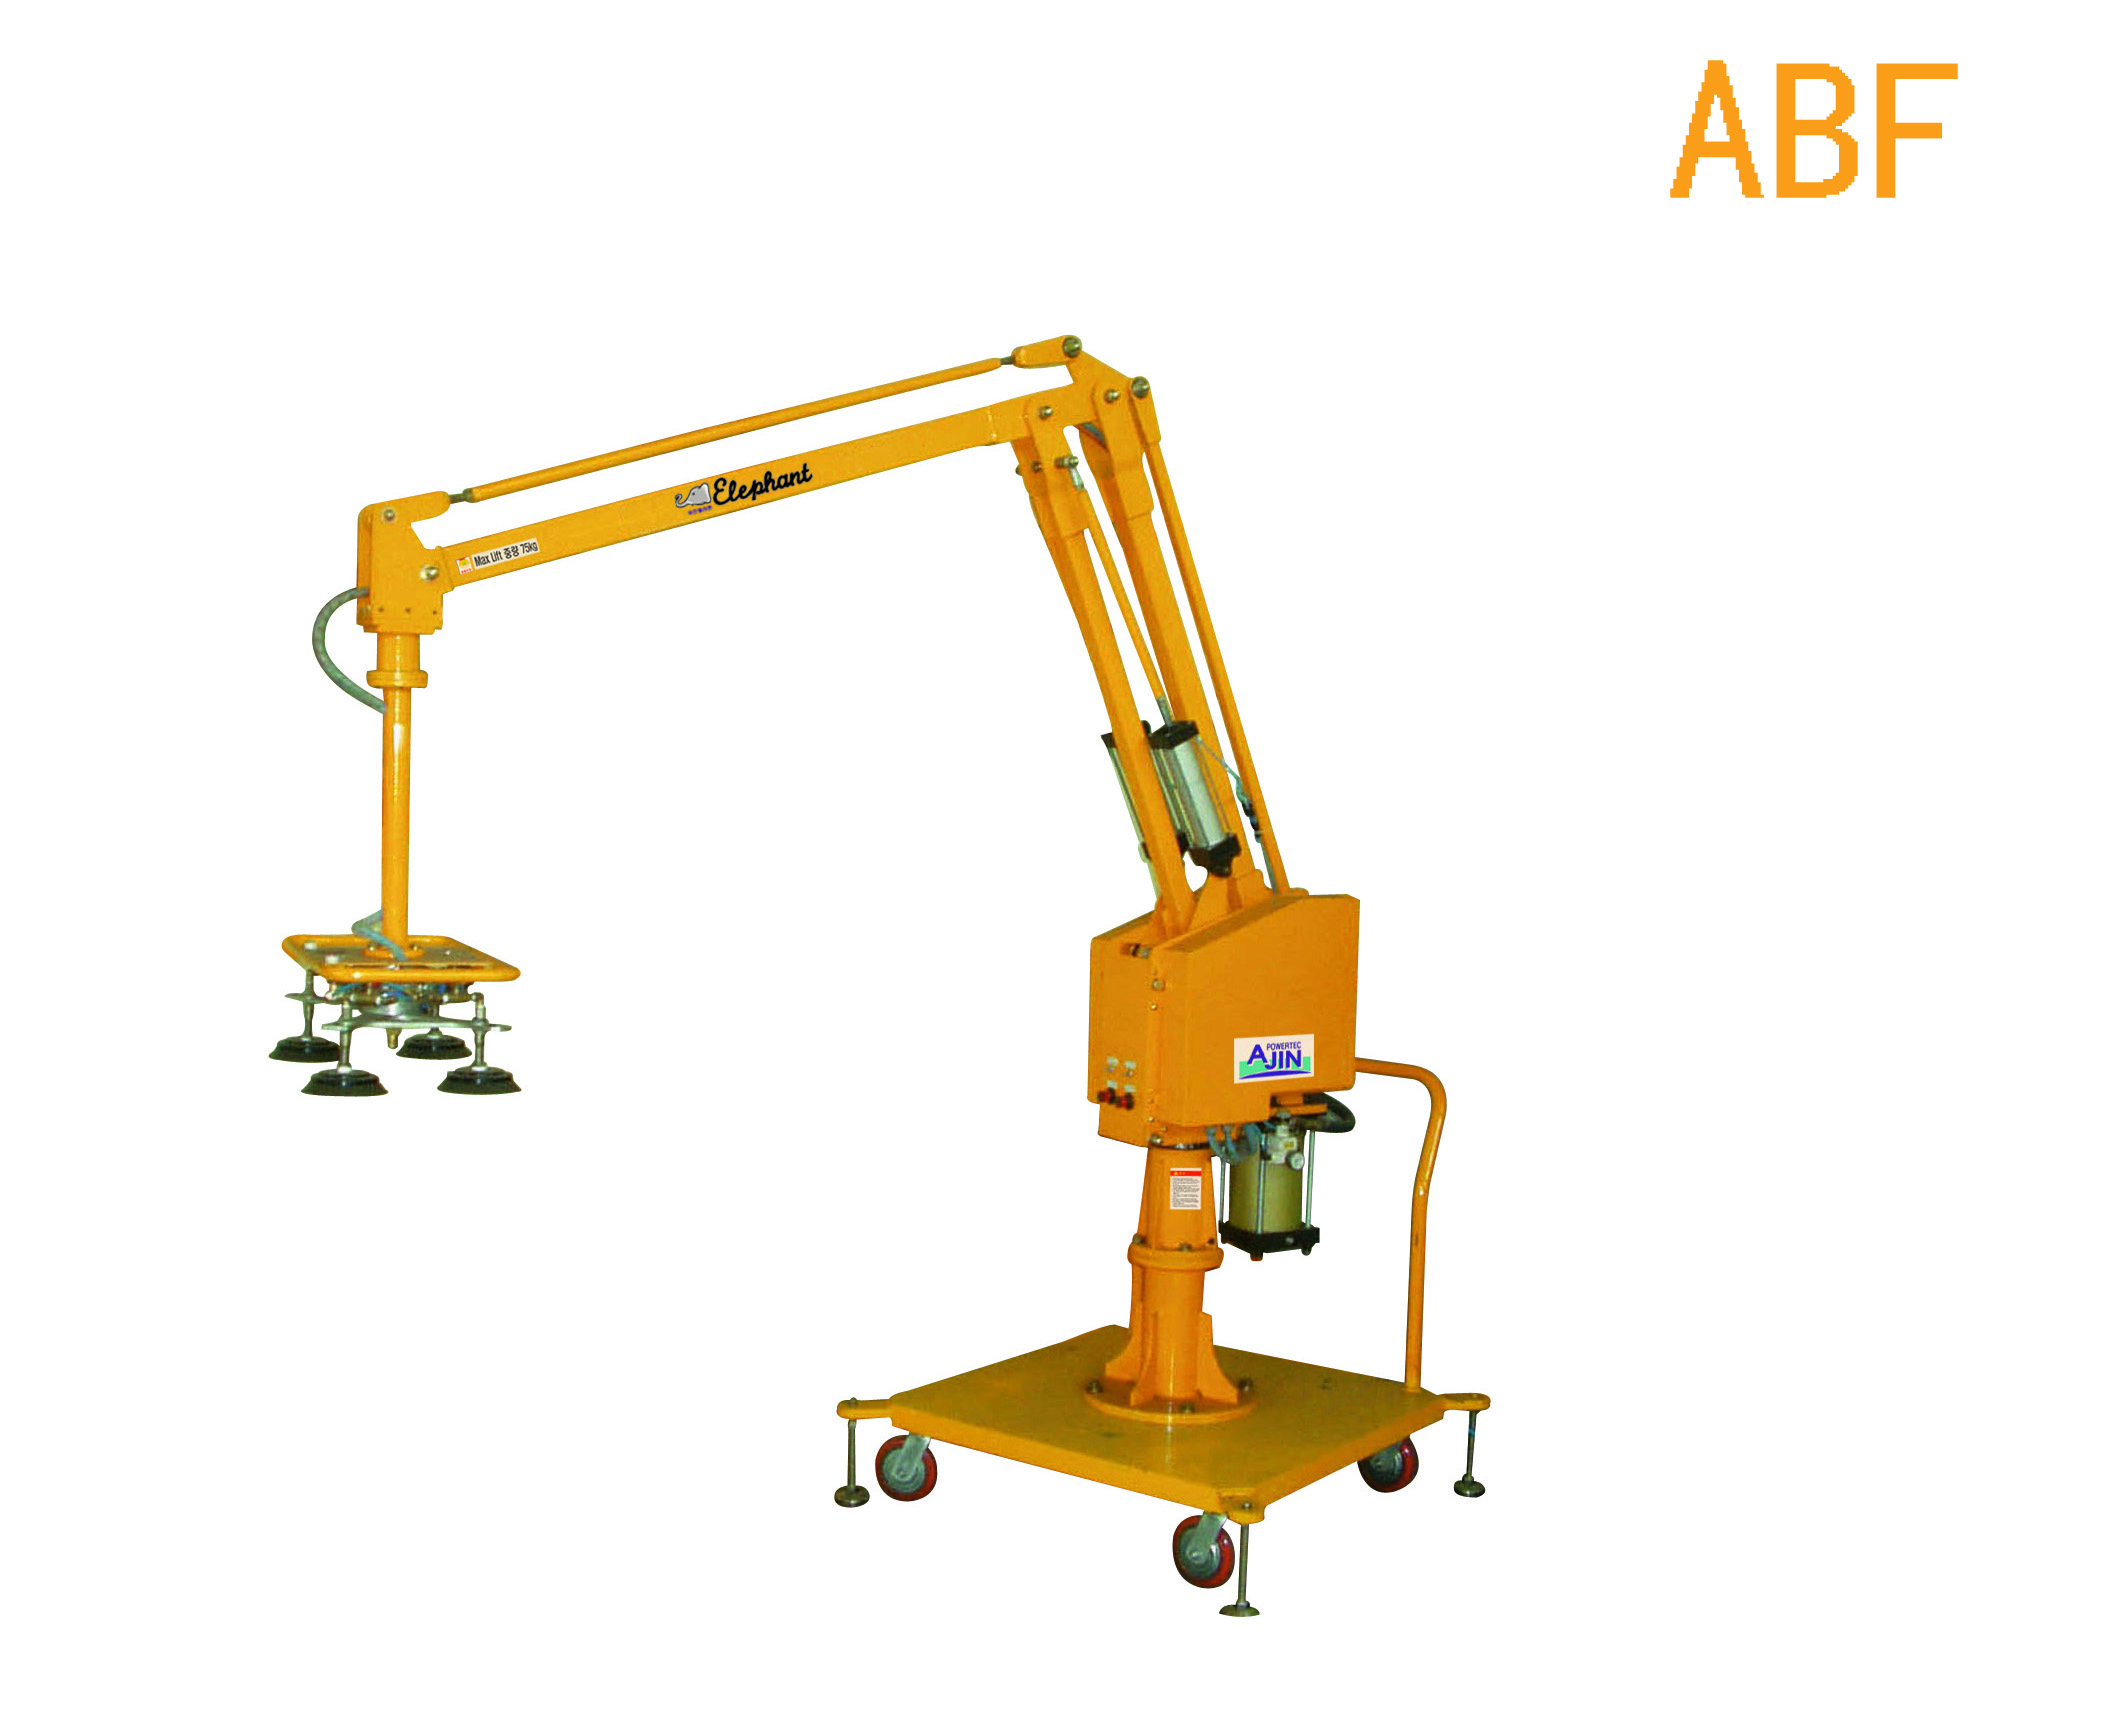 硬臂式助力机械手ABF型-1